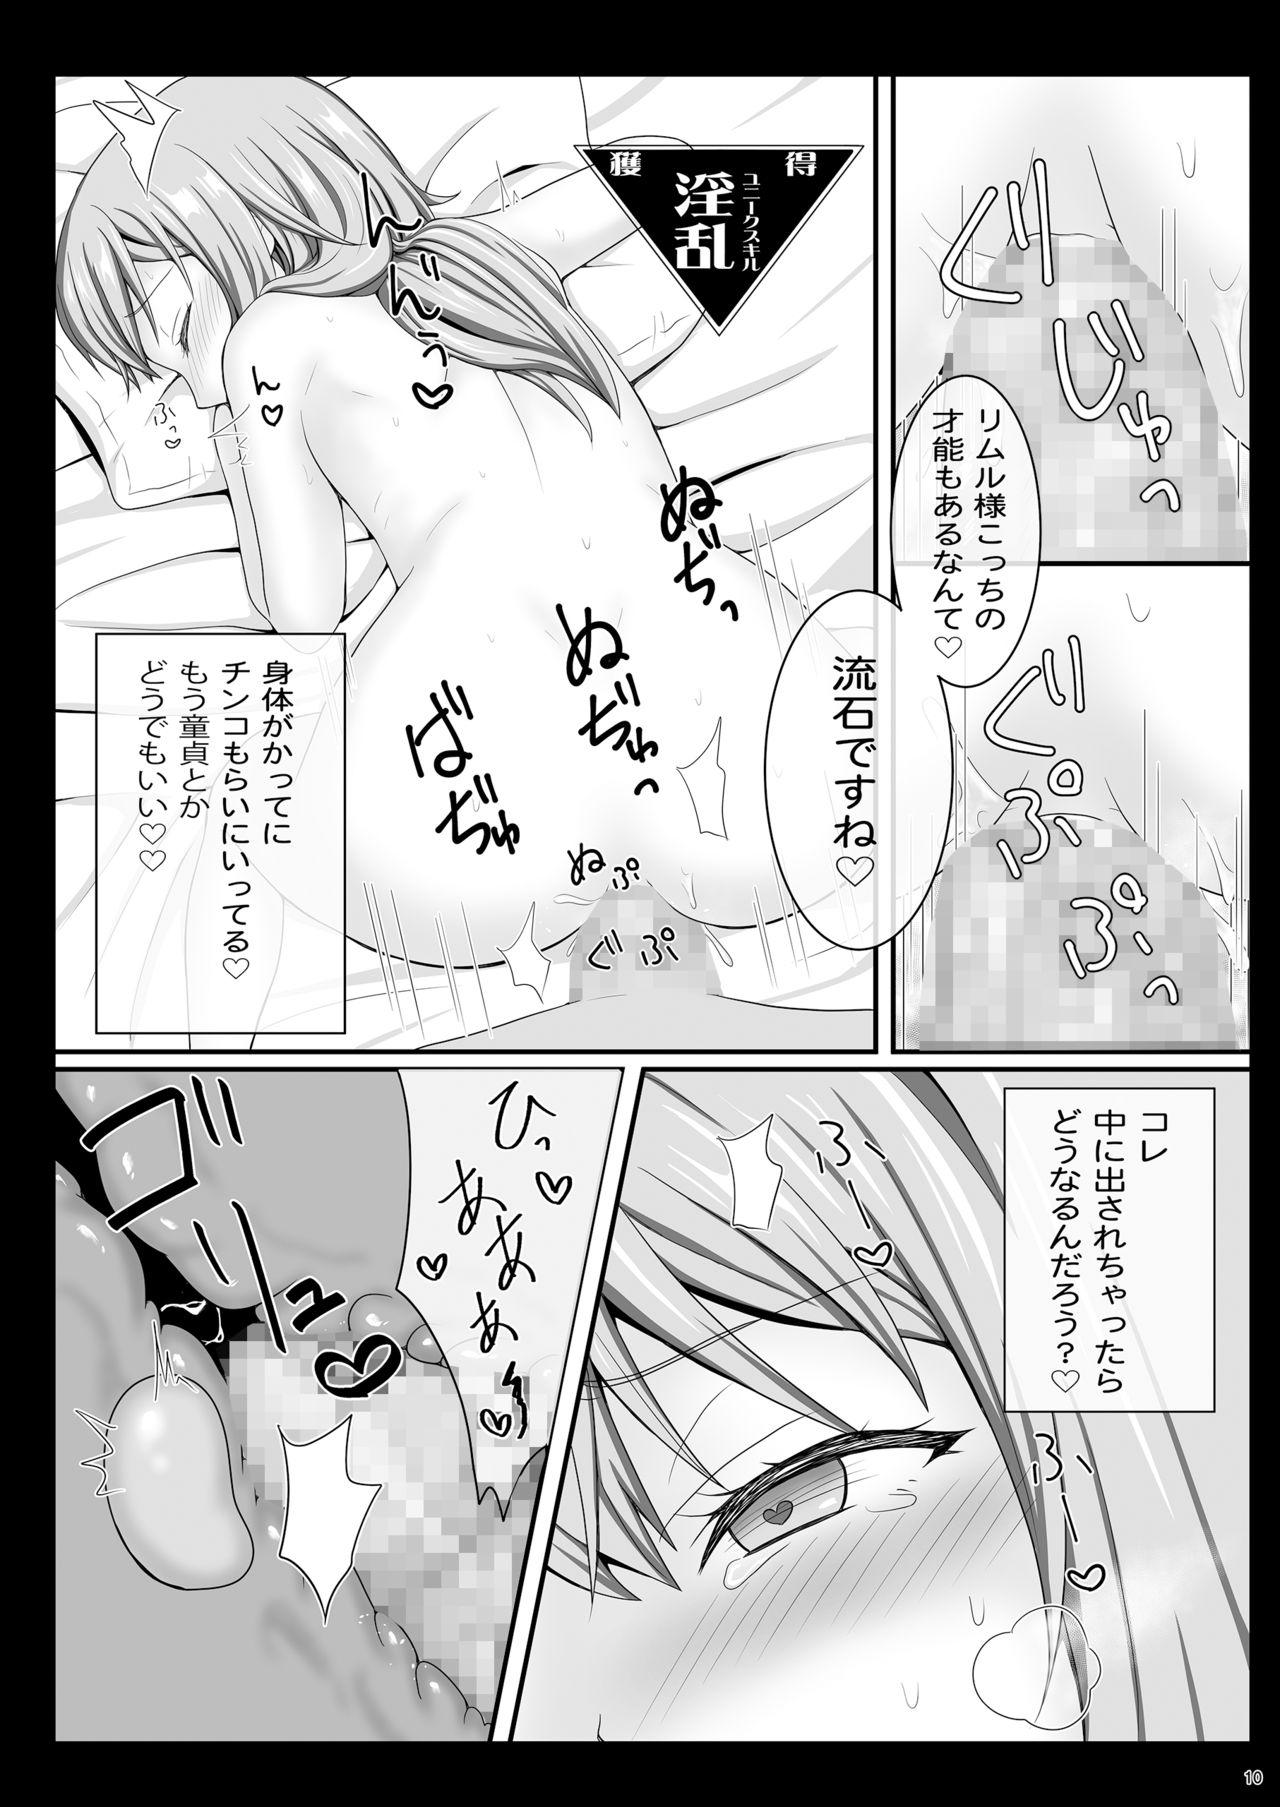 Teamskeet Etchina Rimuru-sama No Matome - Tensei shitara slime datta ken Bisex - Page 9